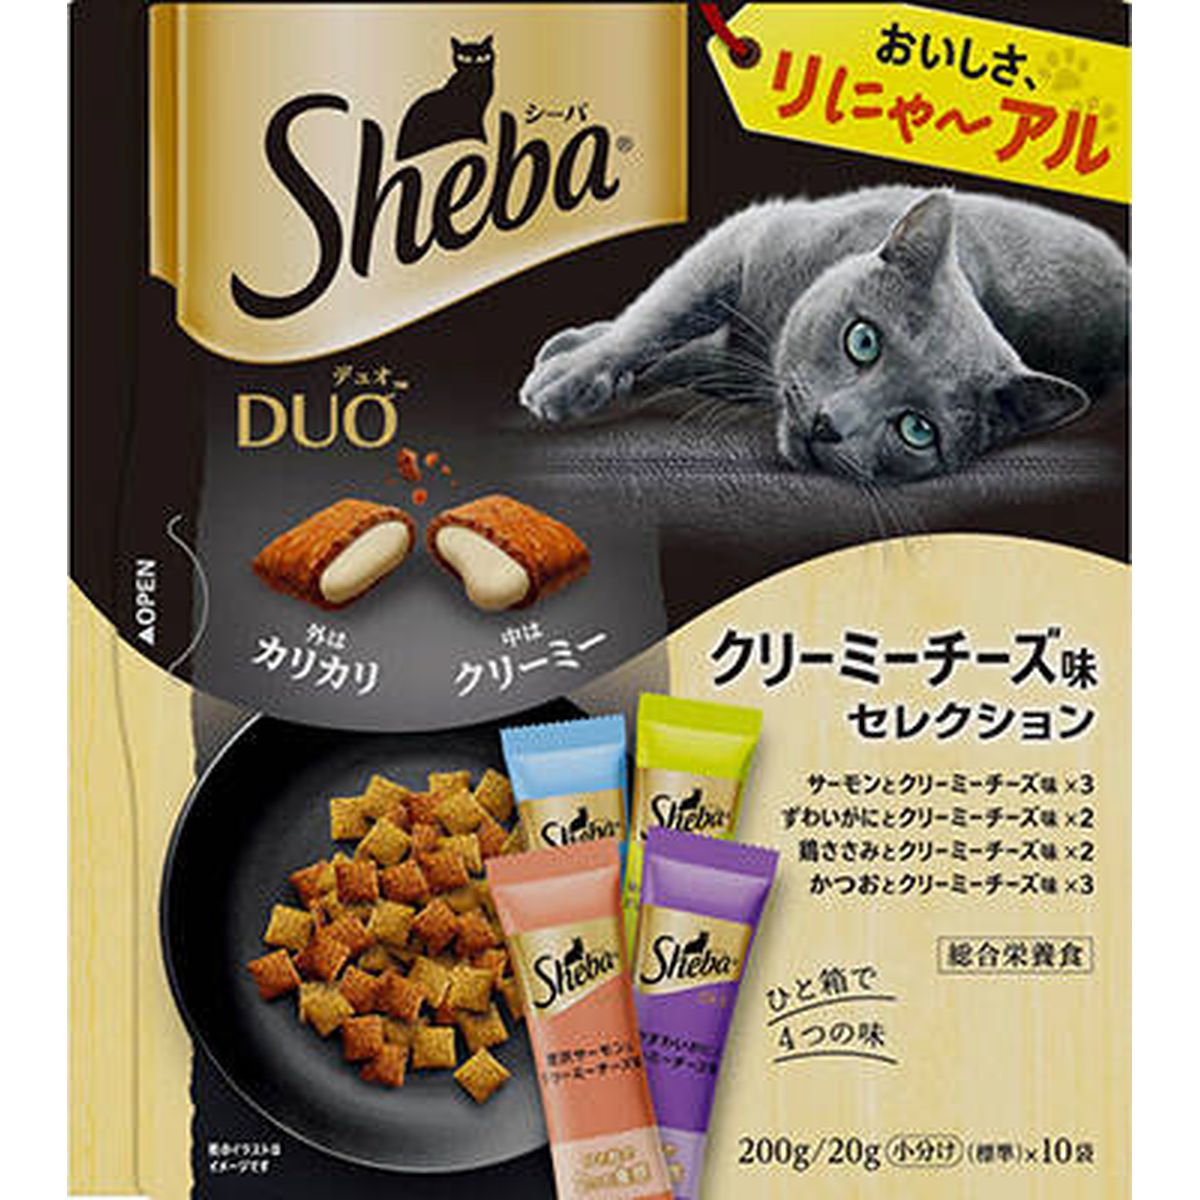 シーバ デュオ クリーミーチーズ味セレクション200g×12袋